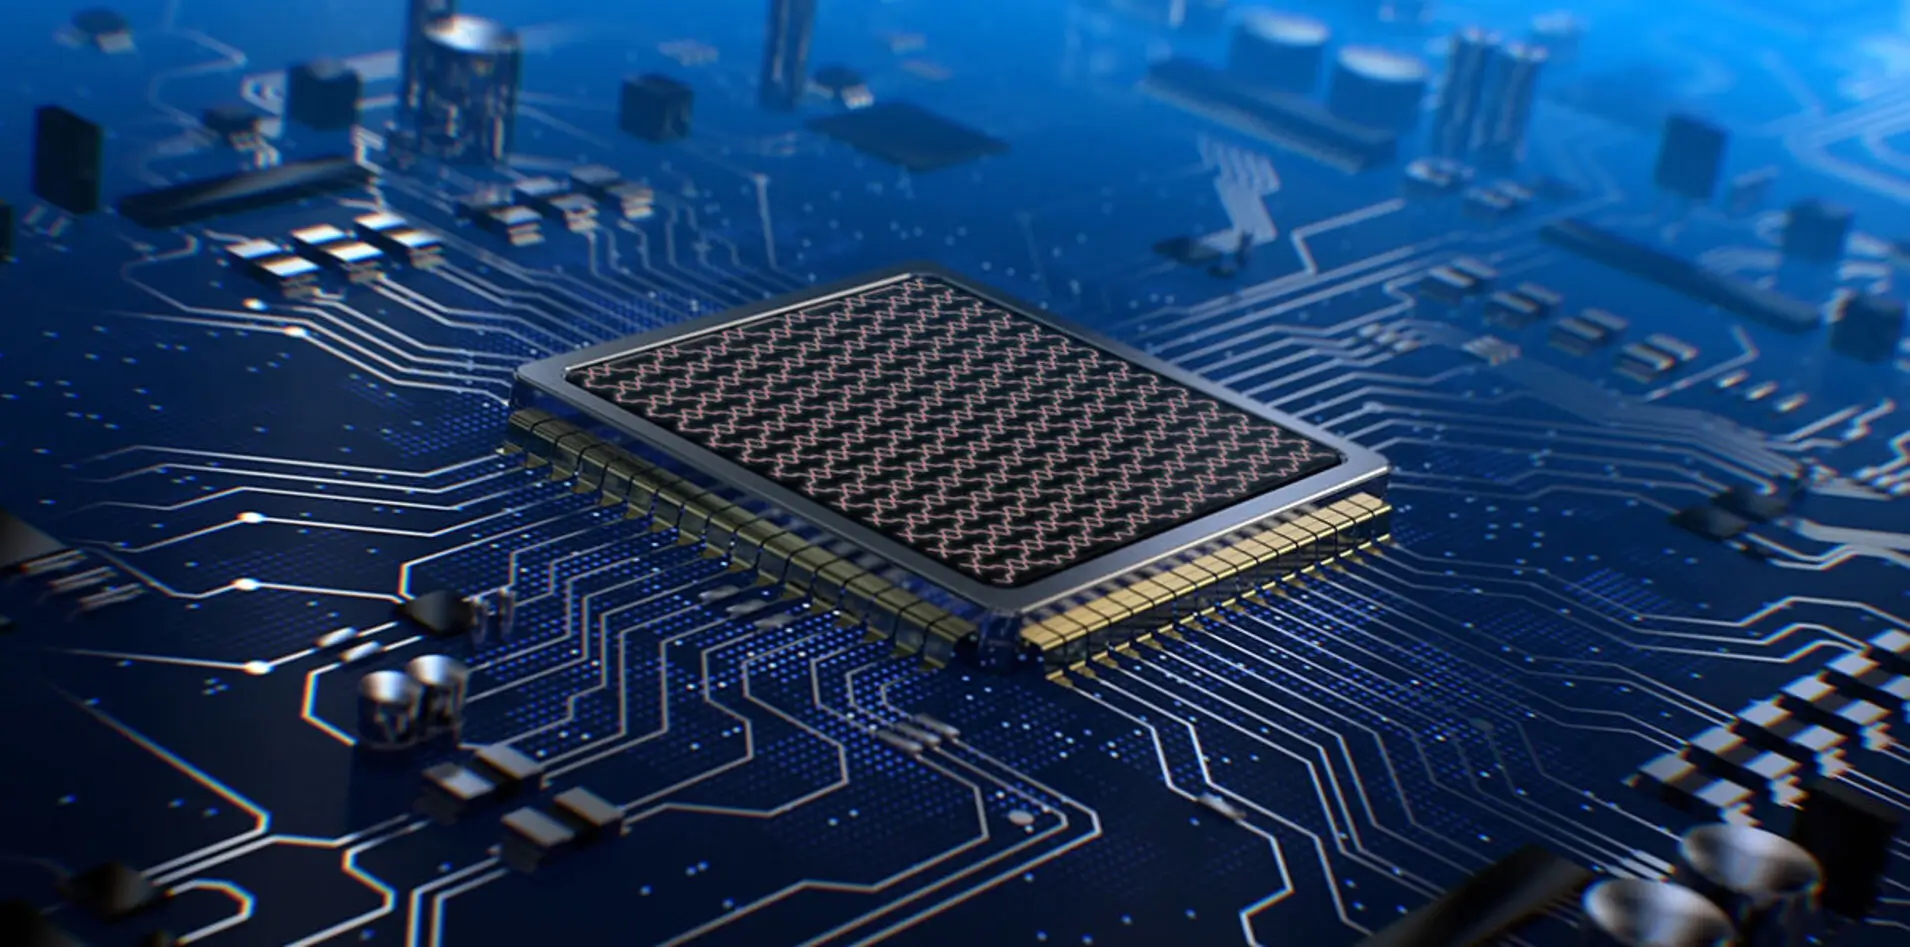 Університет США створив чип, що змінить майбутнє обчислювальної технології